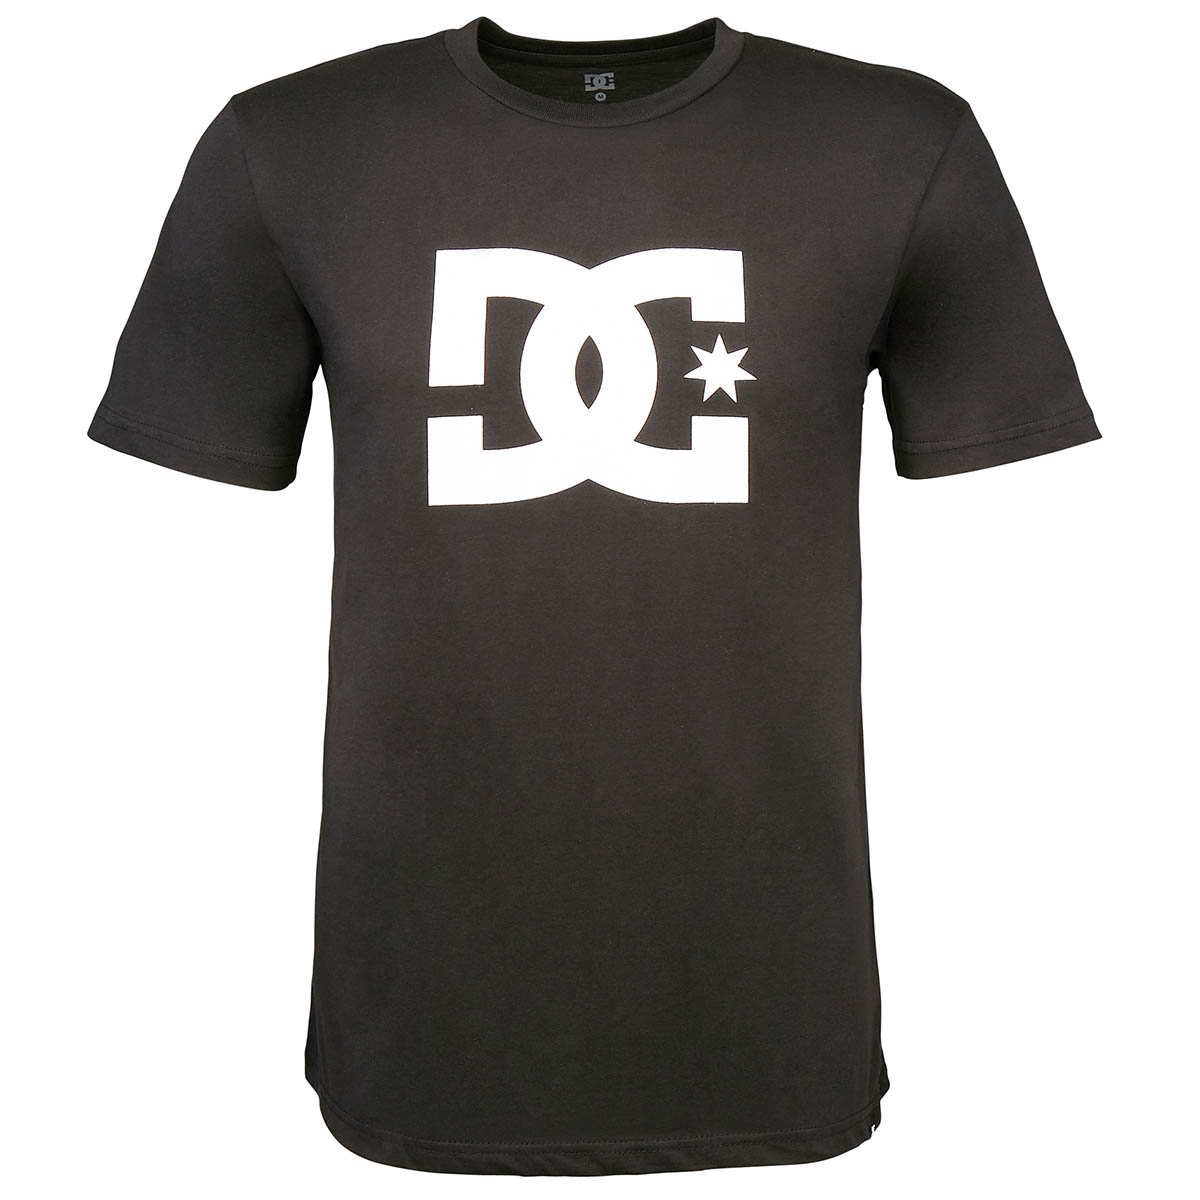 DC T-Shirt Star Black